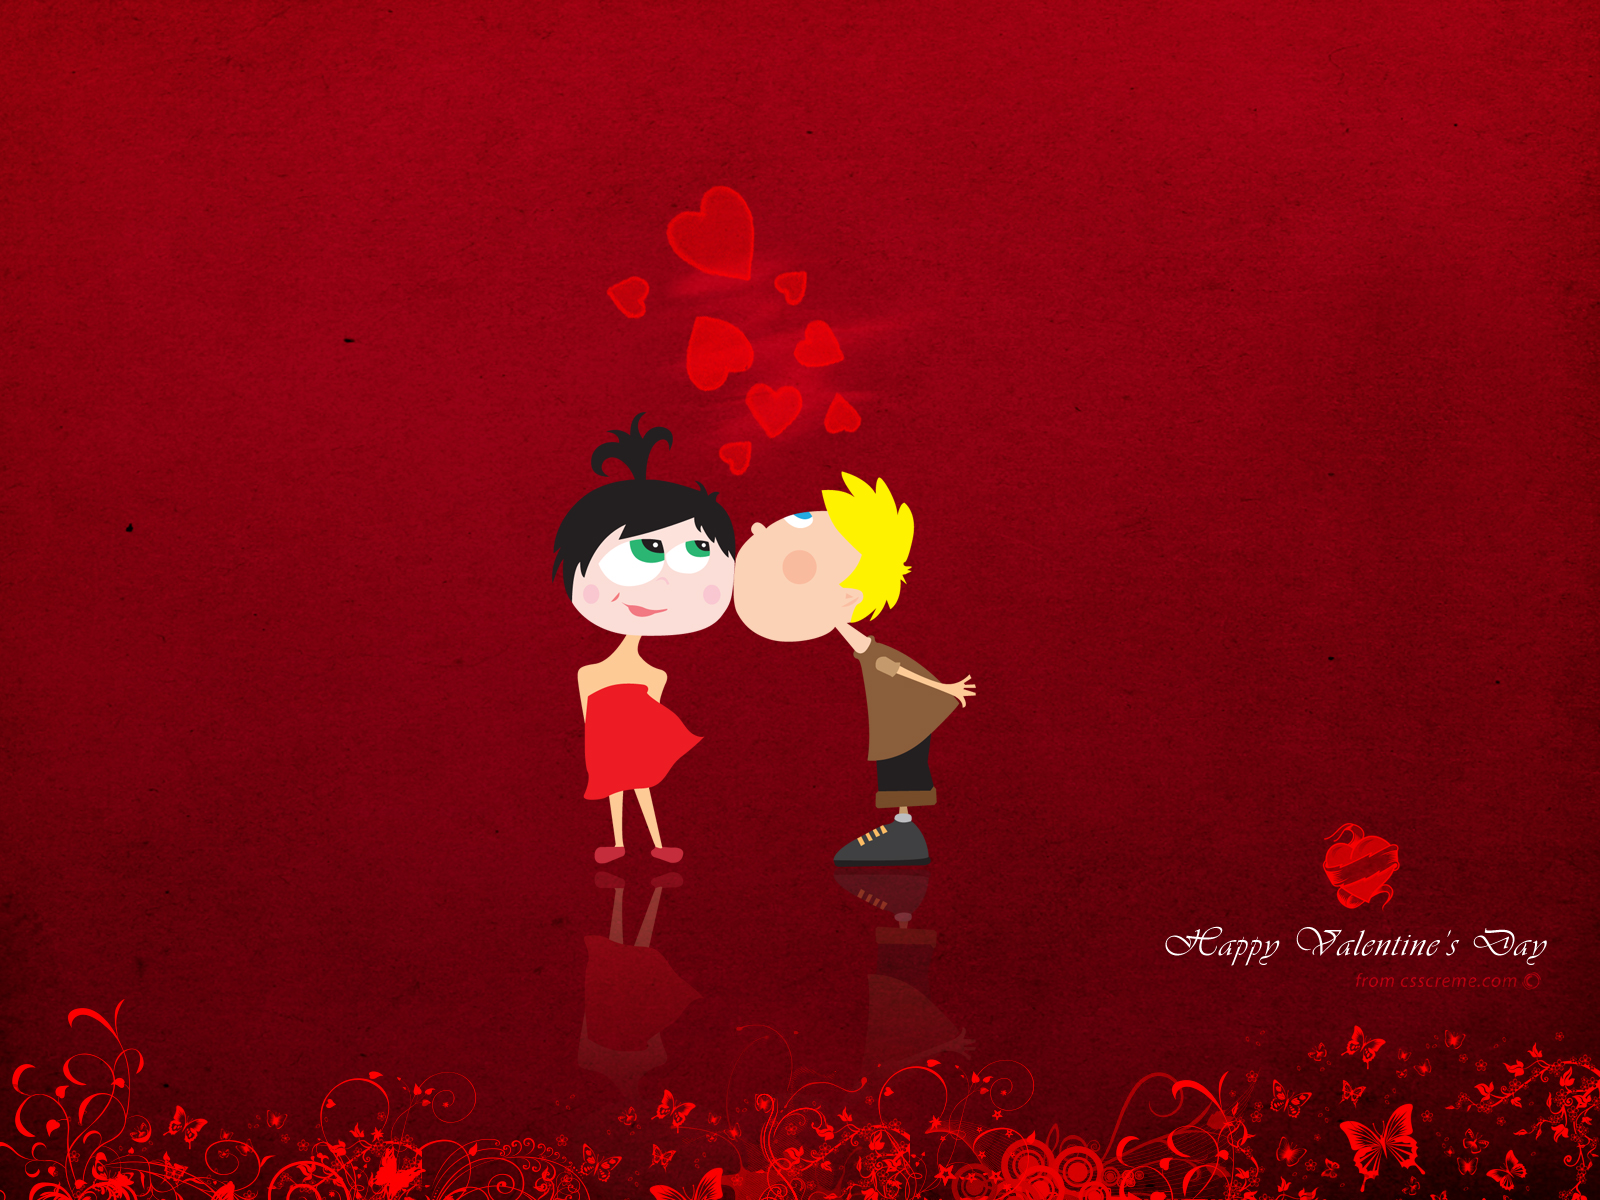 Hình ảnh chúc mừng Valentine lãng mạn nhất và ý nghĩa nhất